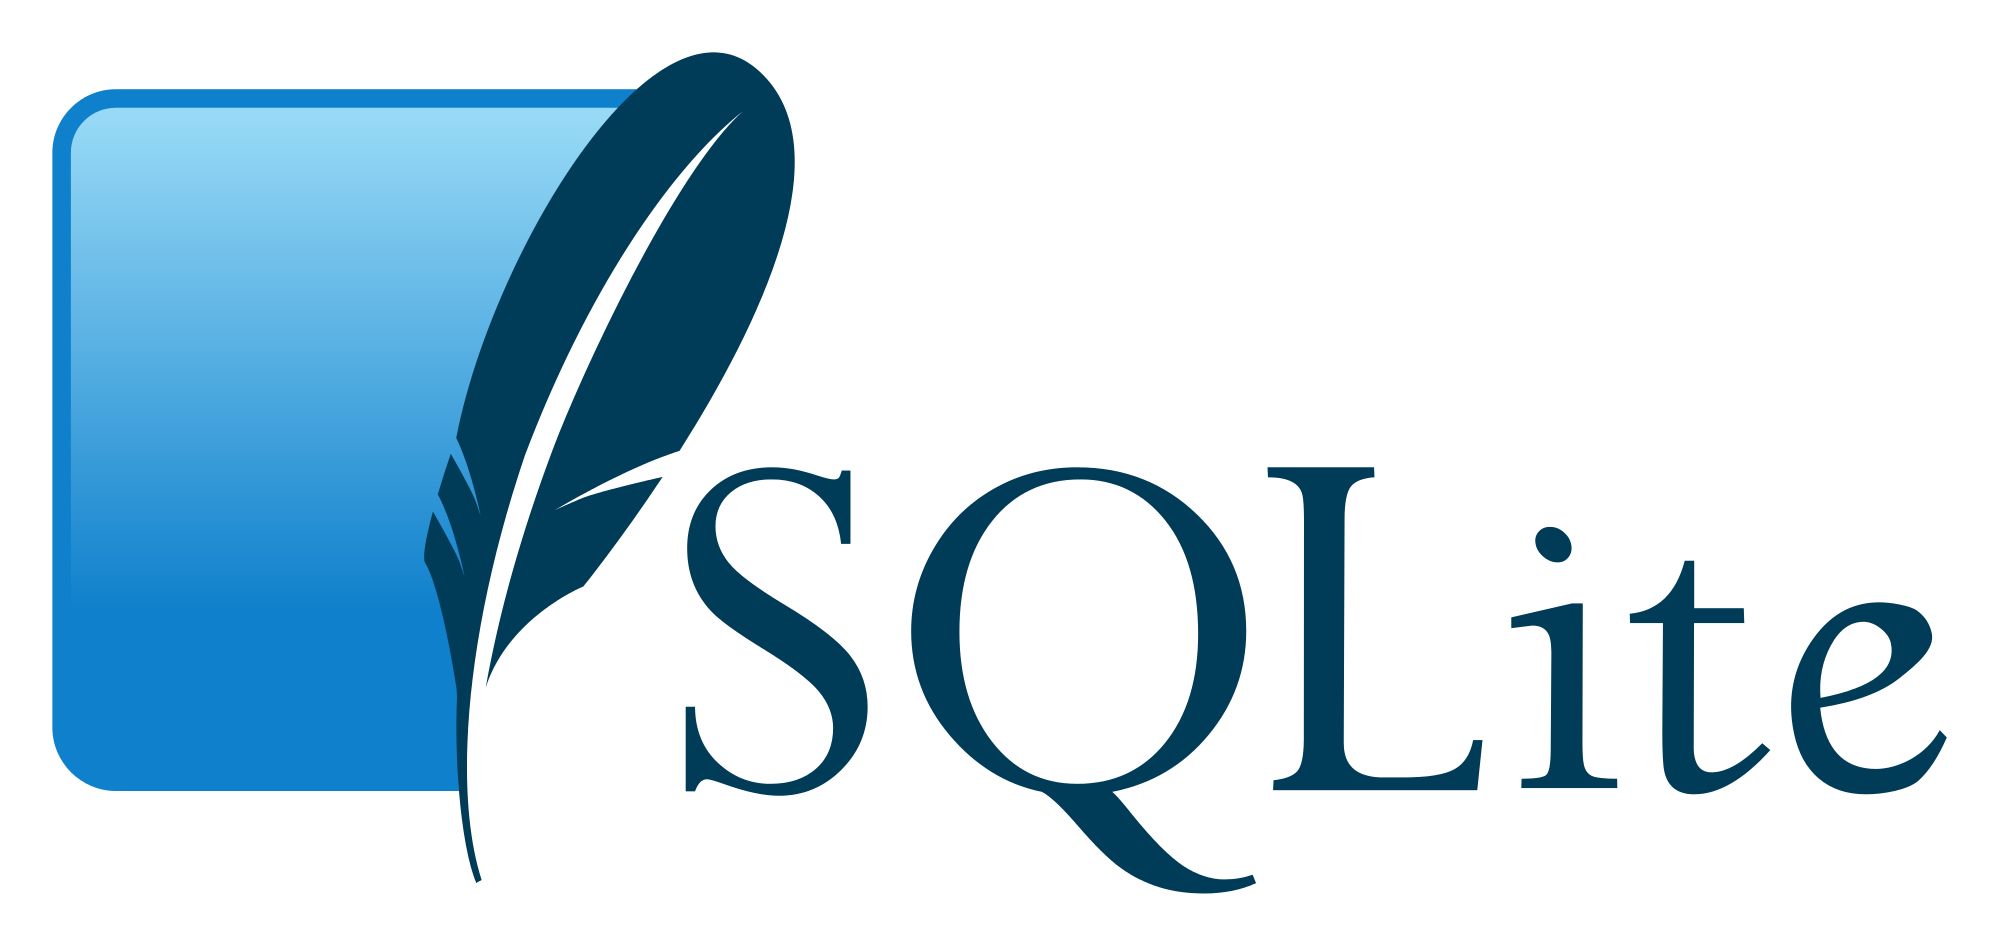 SQLite-logo